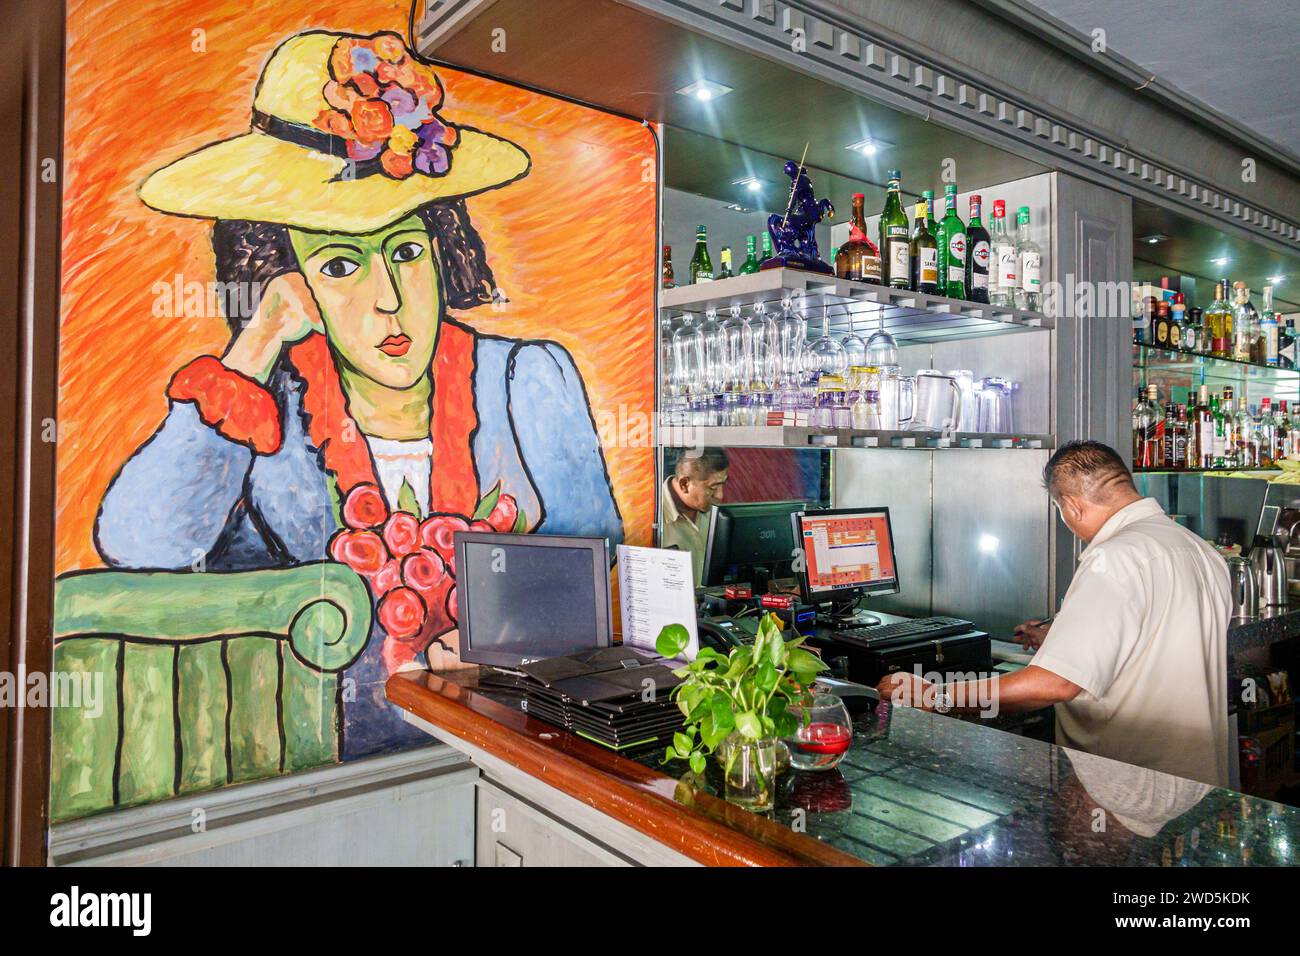 Merida Mexique,centro historico quartier historique central,bar pub,affiche de peinture Alexej Von Jawlensky artiste expressionnisme,intérieur,barman m Banque D'Images